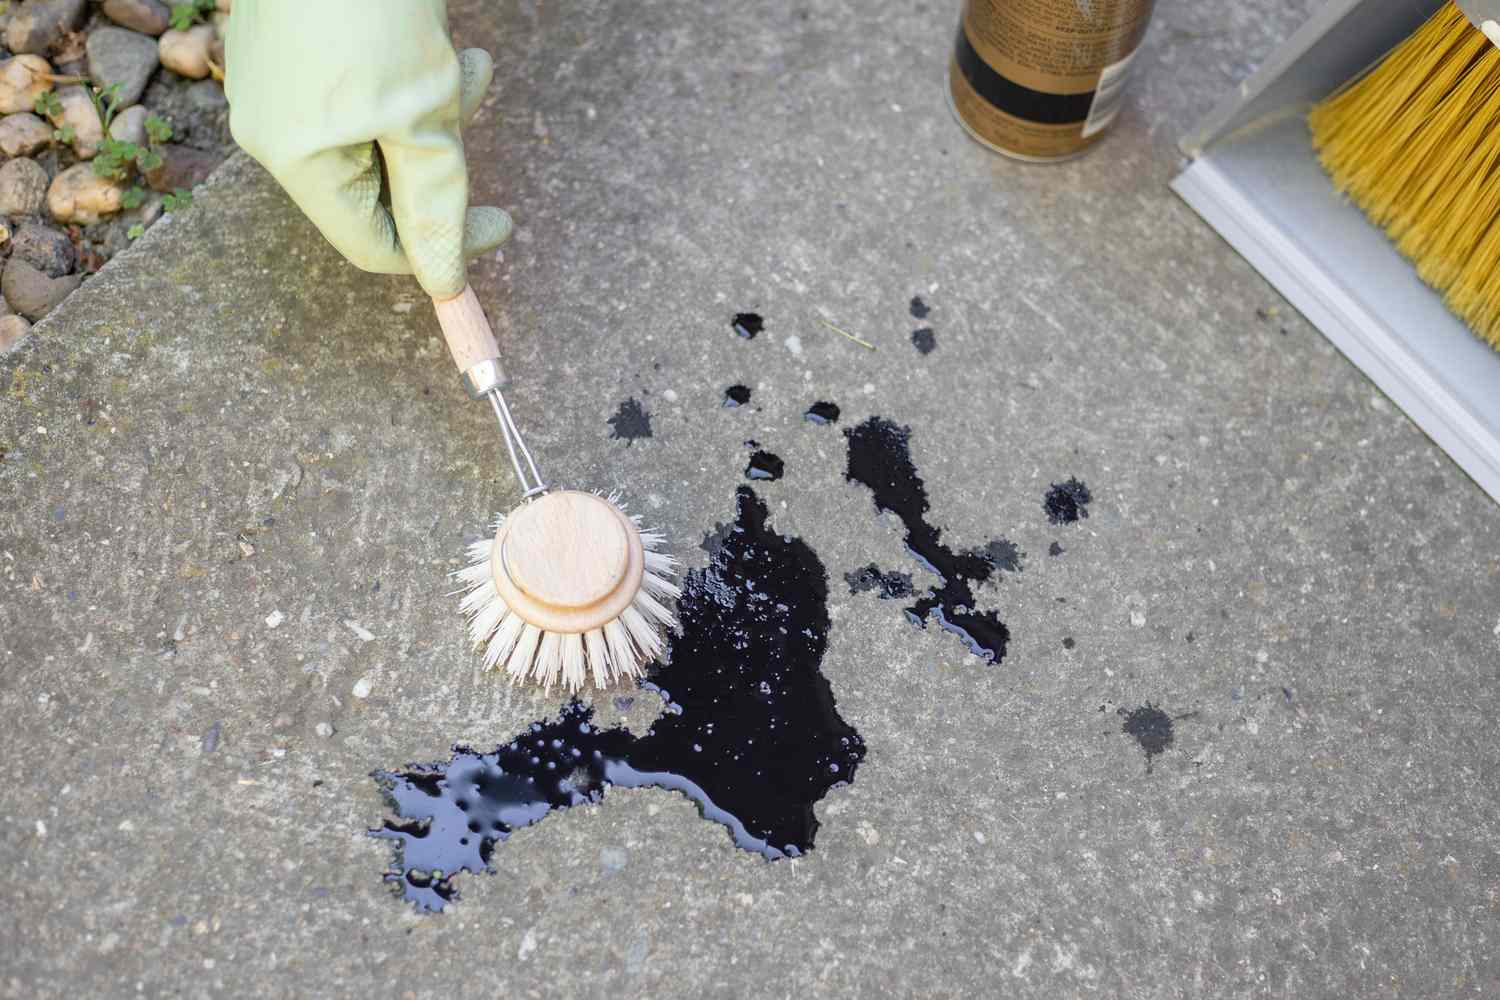 Cepillo de fregar sostenido sobre una mancha de aceite negro en el suelo de hormigón con guantes